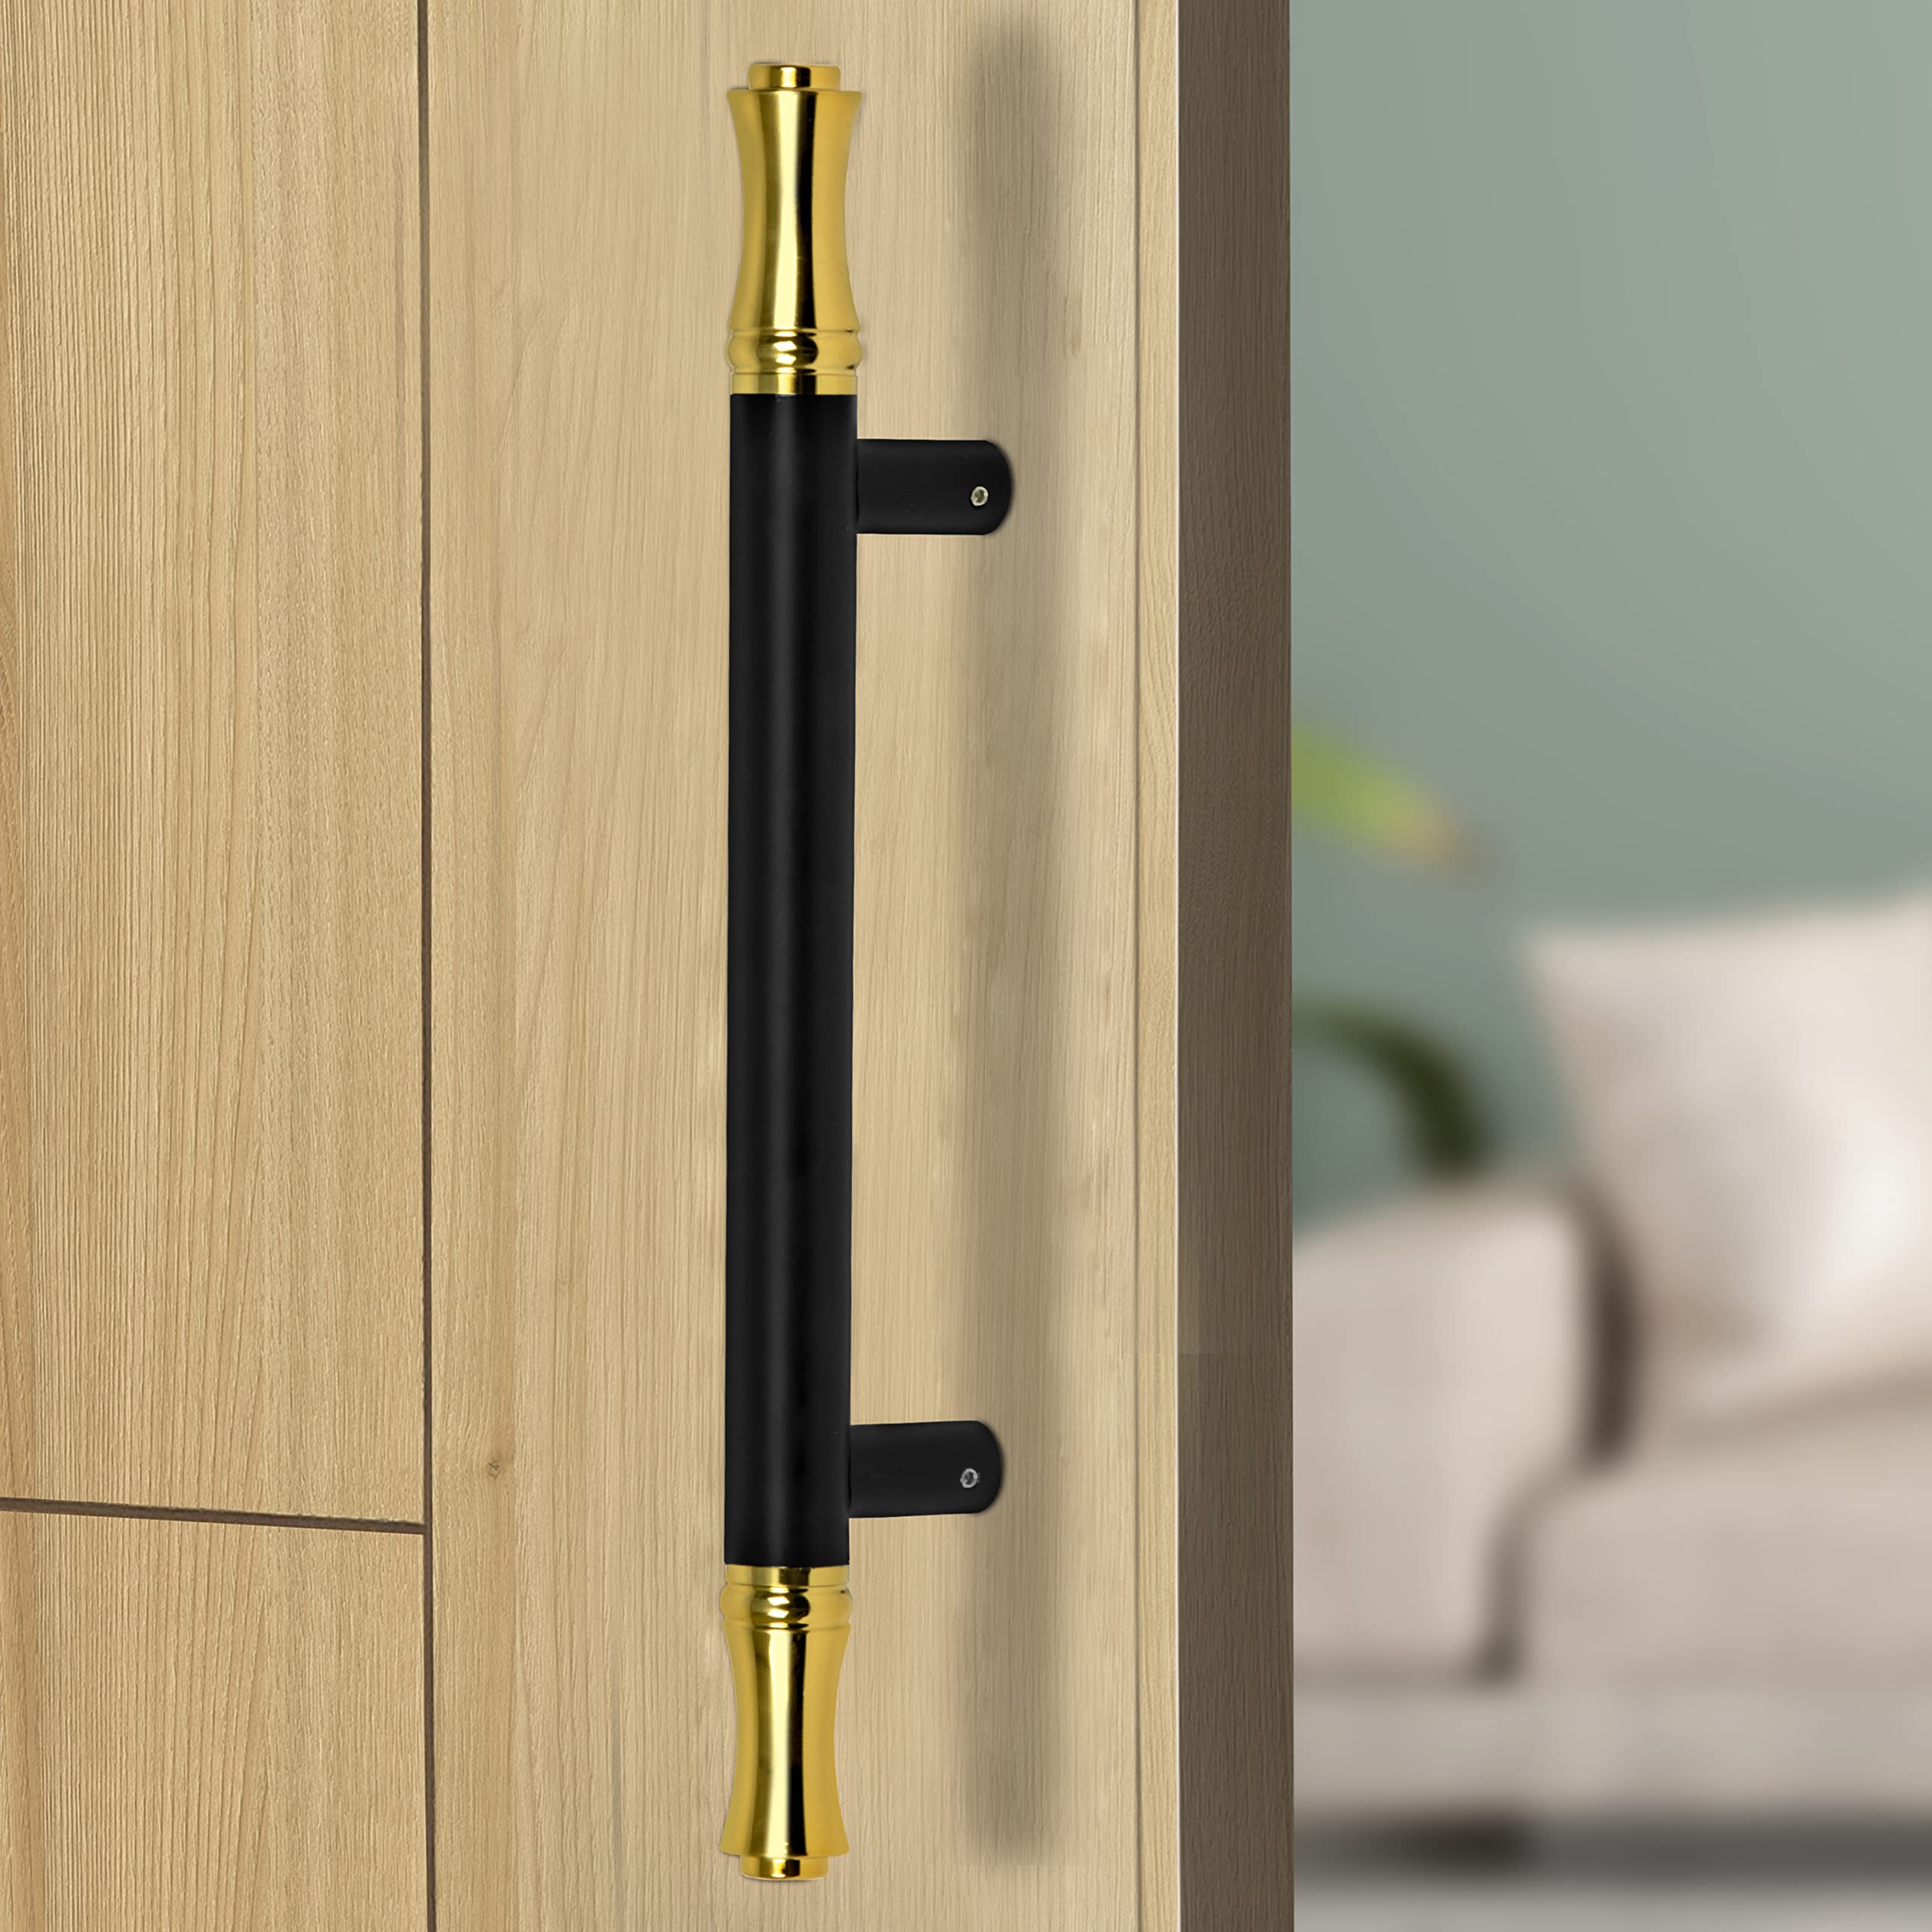 Plantex Main Door Handle/Door & Home Decor/14 Inch Main Door Handle/Door Pull Push Handle – Pack of 1 (121,Black & Gold)